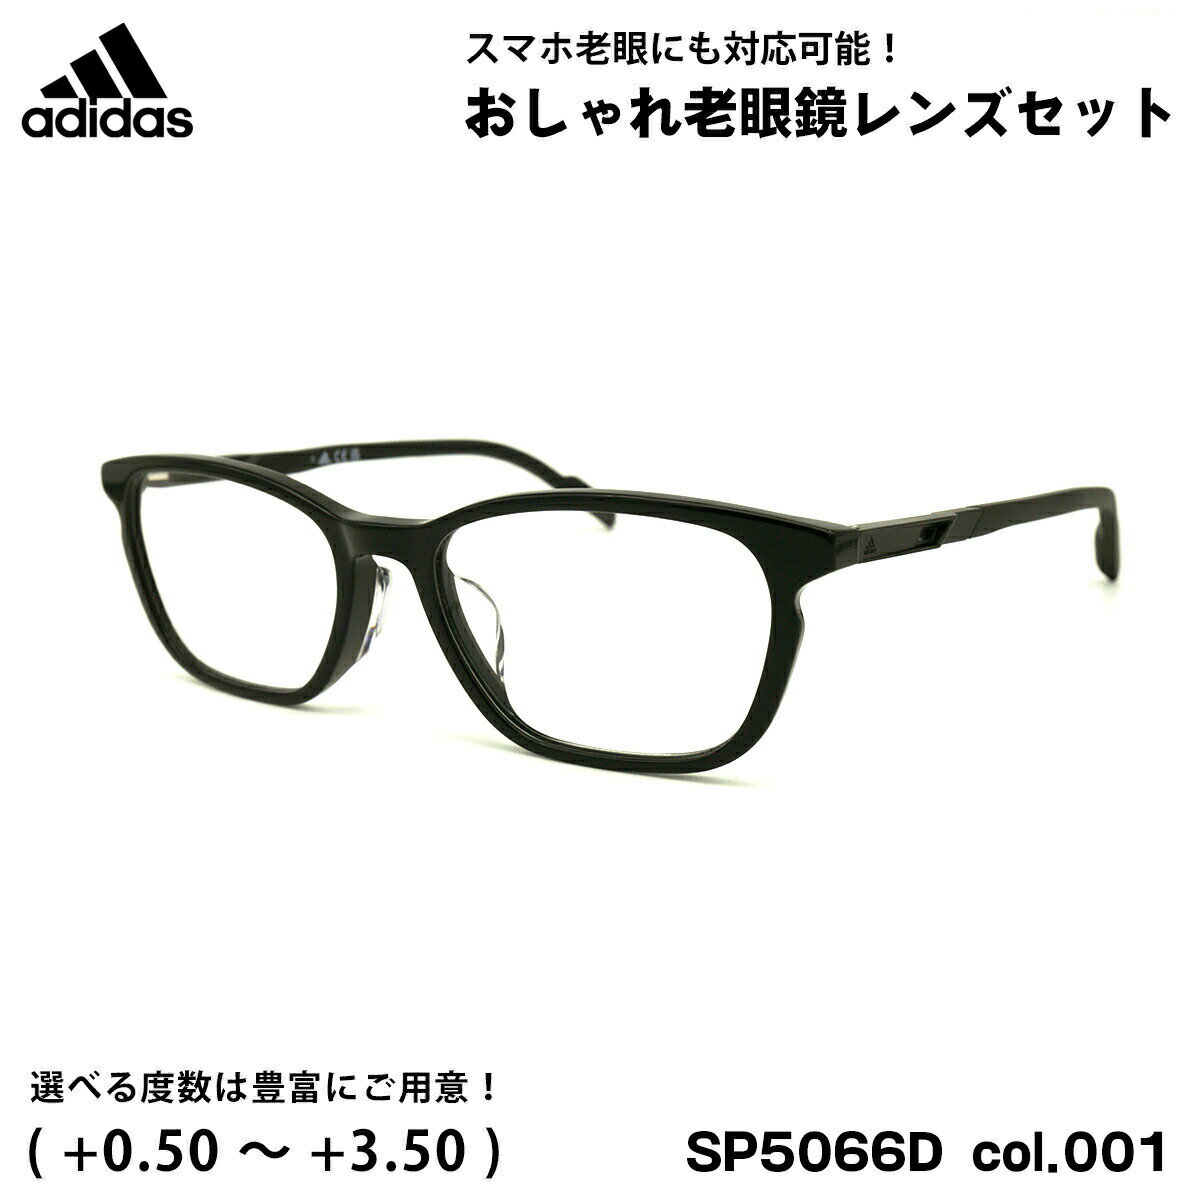 アディダス 老眼鏡 SP5066D (SP5066D/V) col.001 54mm adidas アジアンフィット 国内正規品 ブルーライトカット UVカット